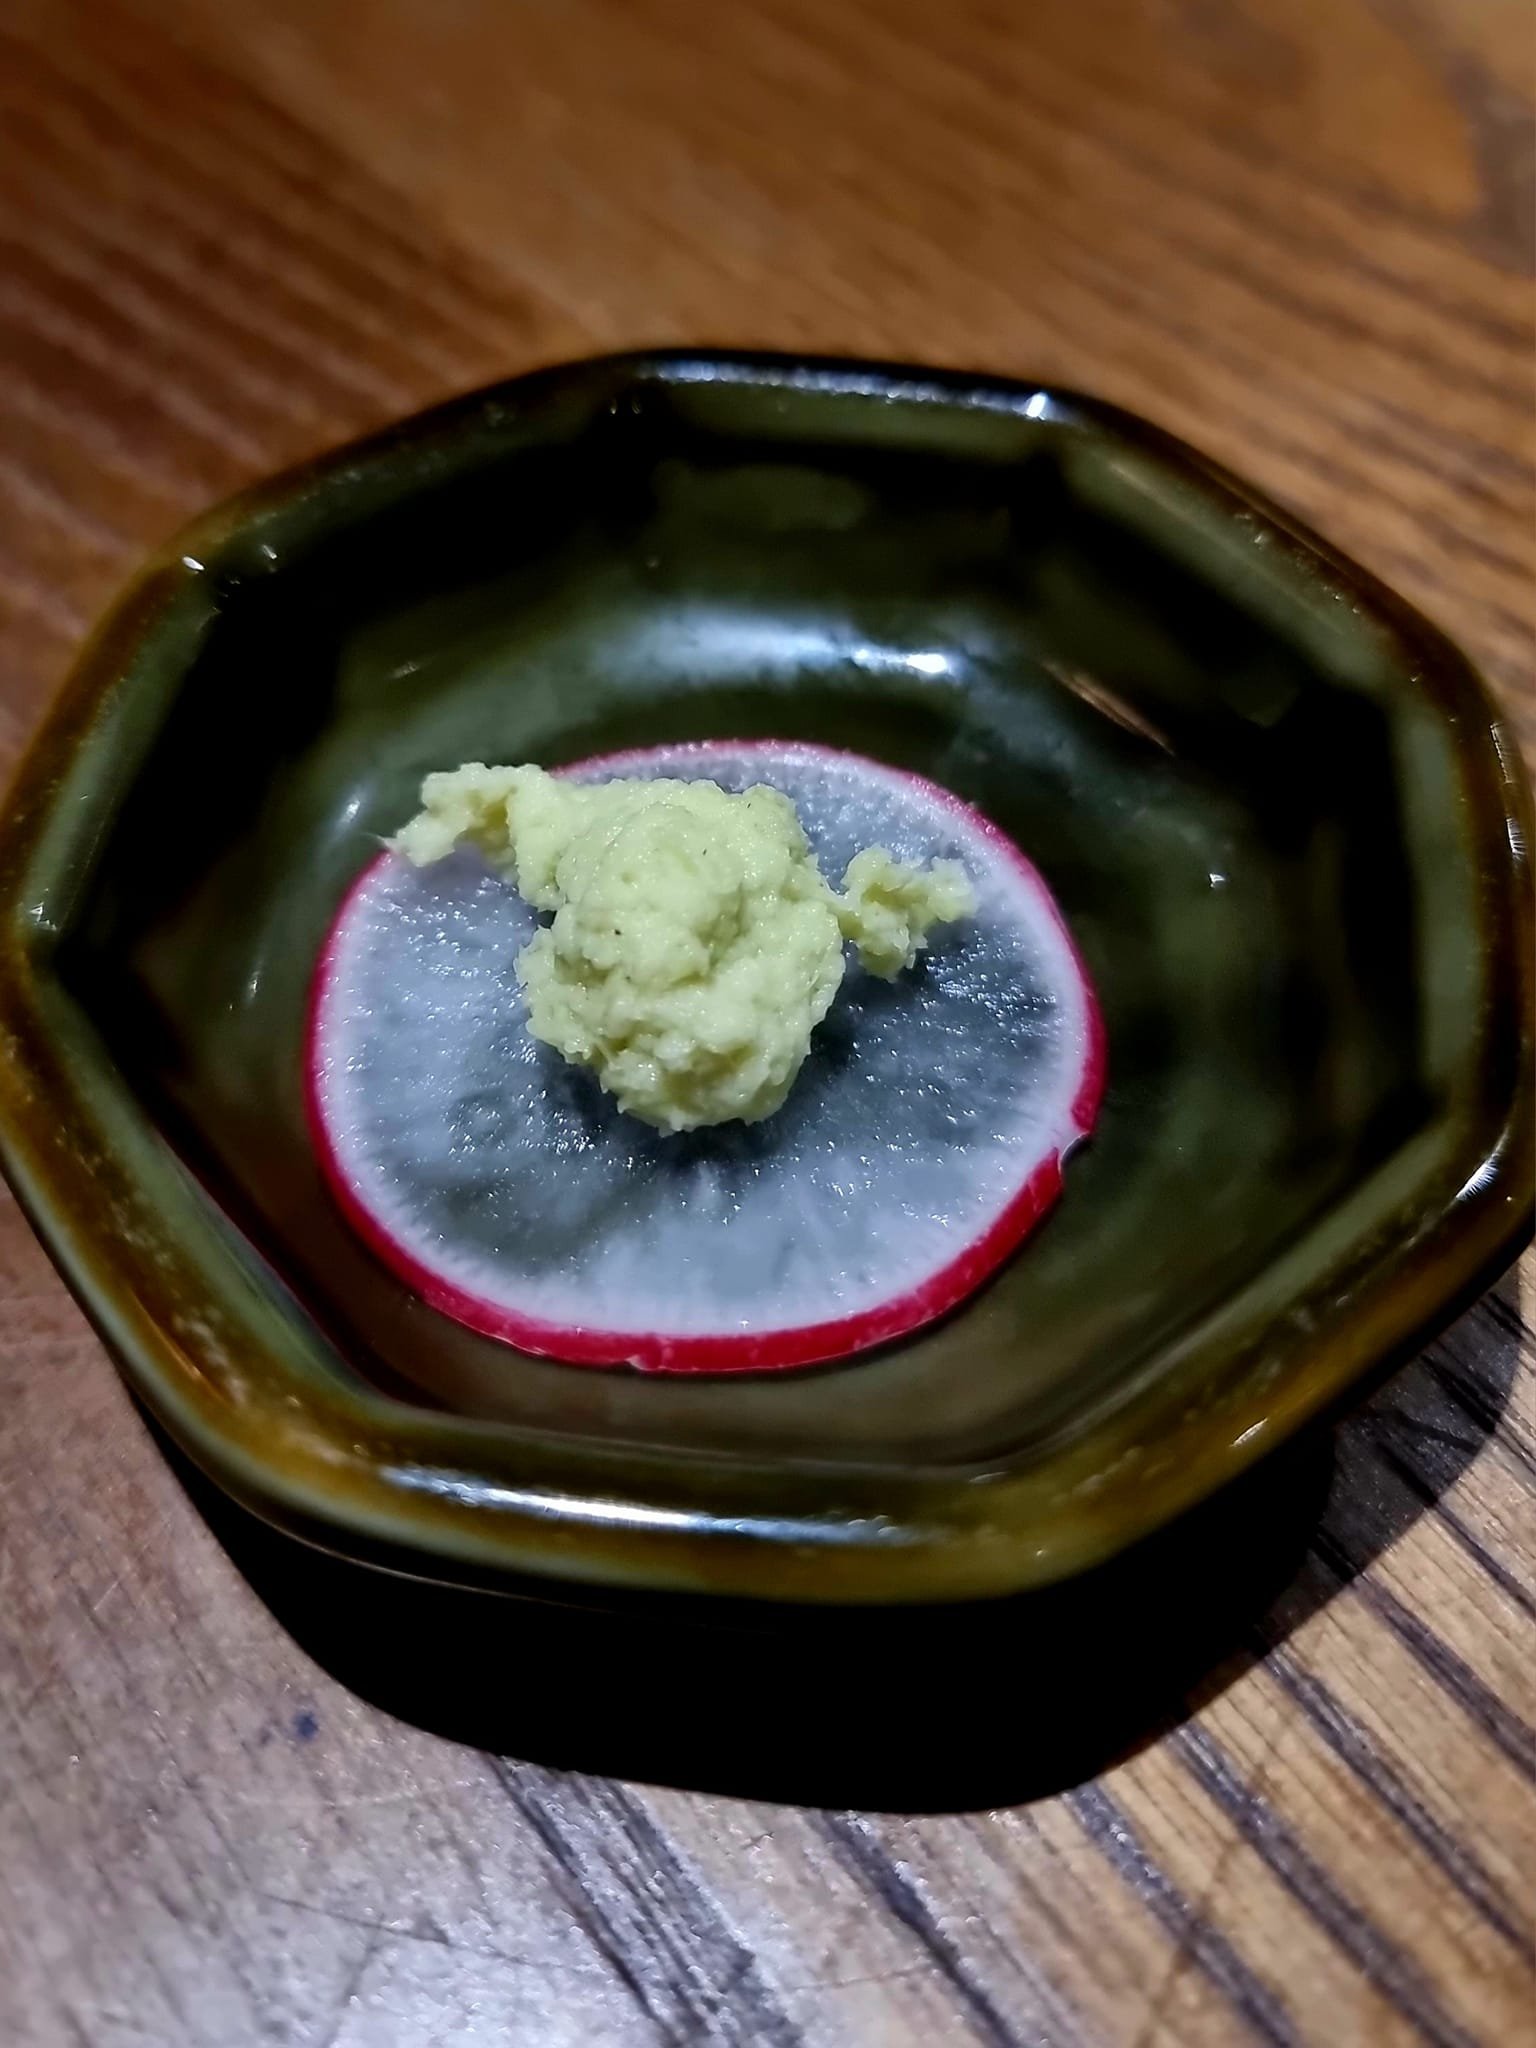 kibako wasabi close up.jpg